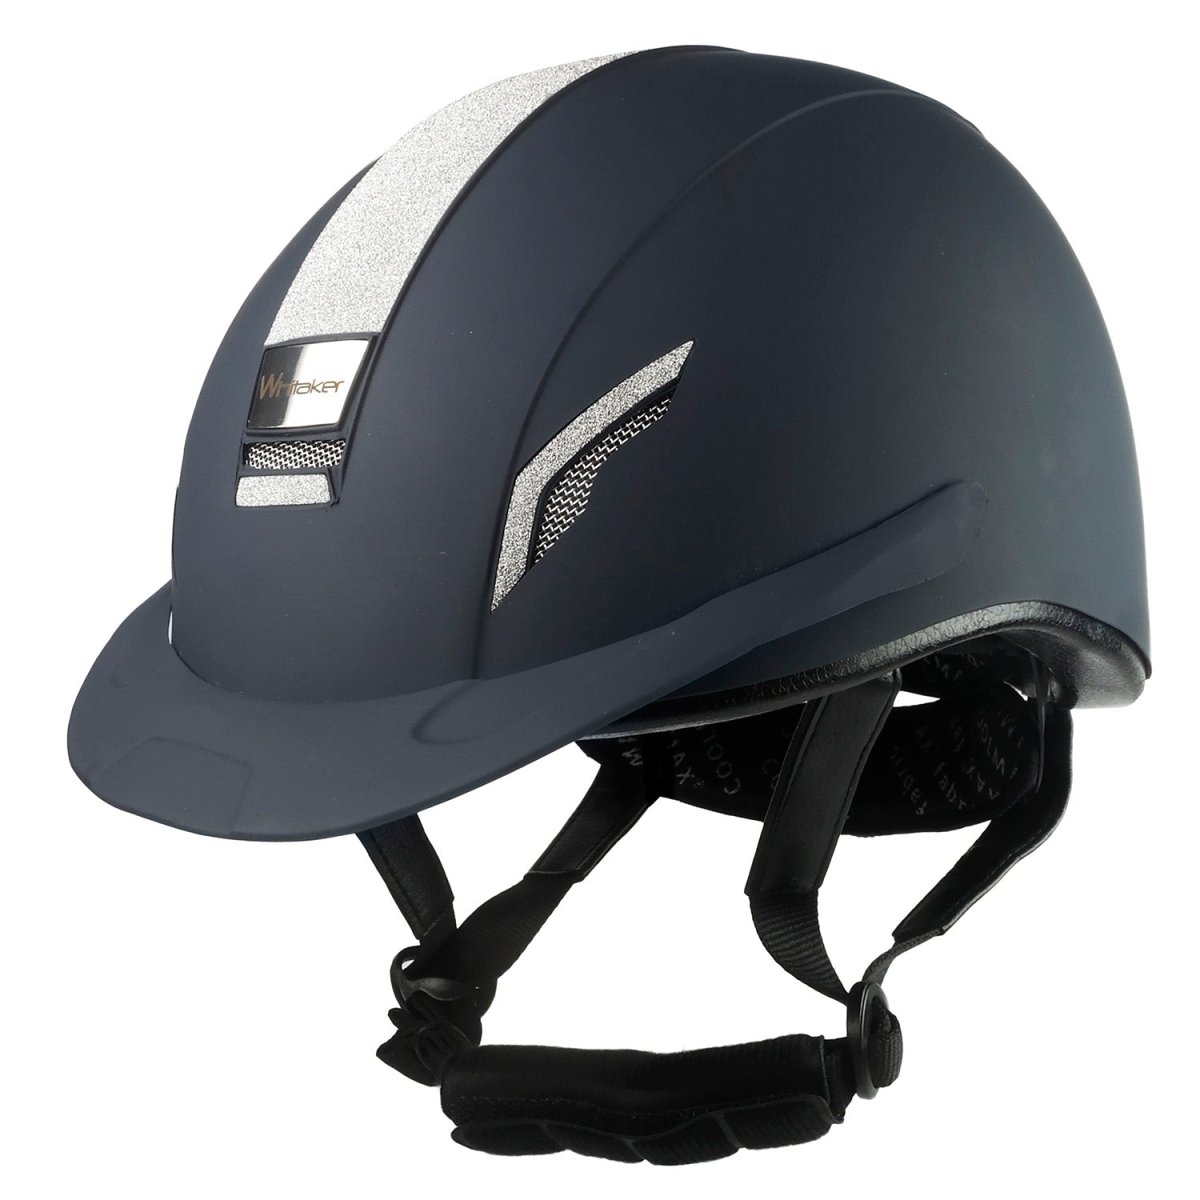 Whitaker Vx2 Sparkly Riding Helmet - Navy - Small(50-54Cm)